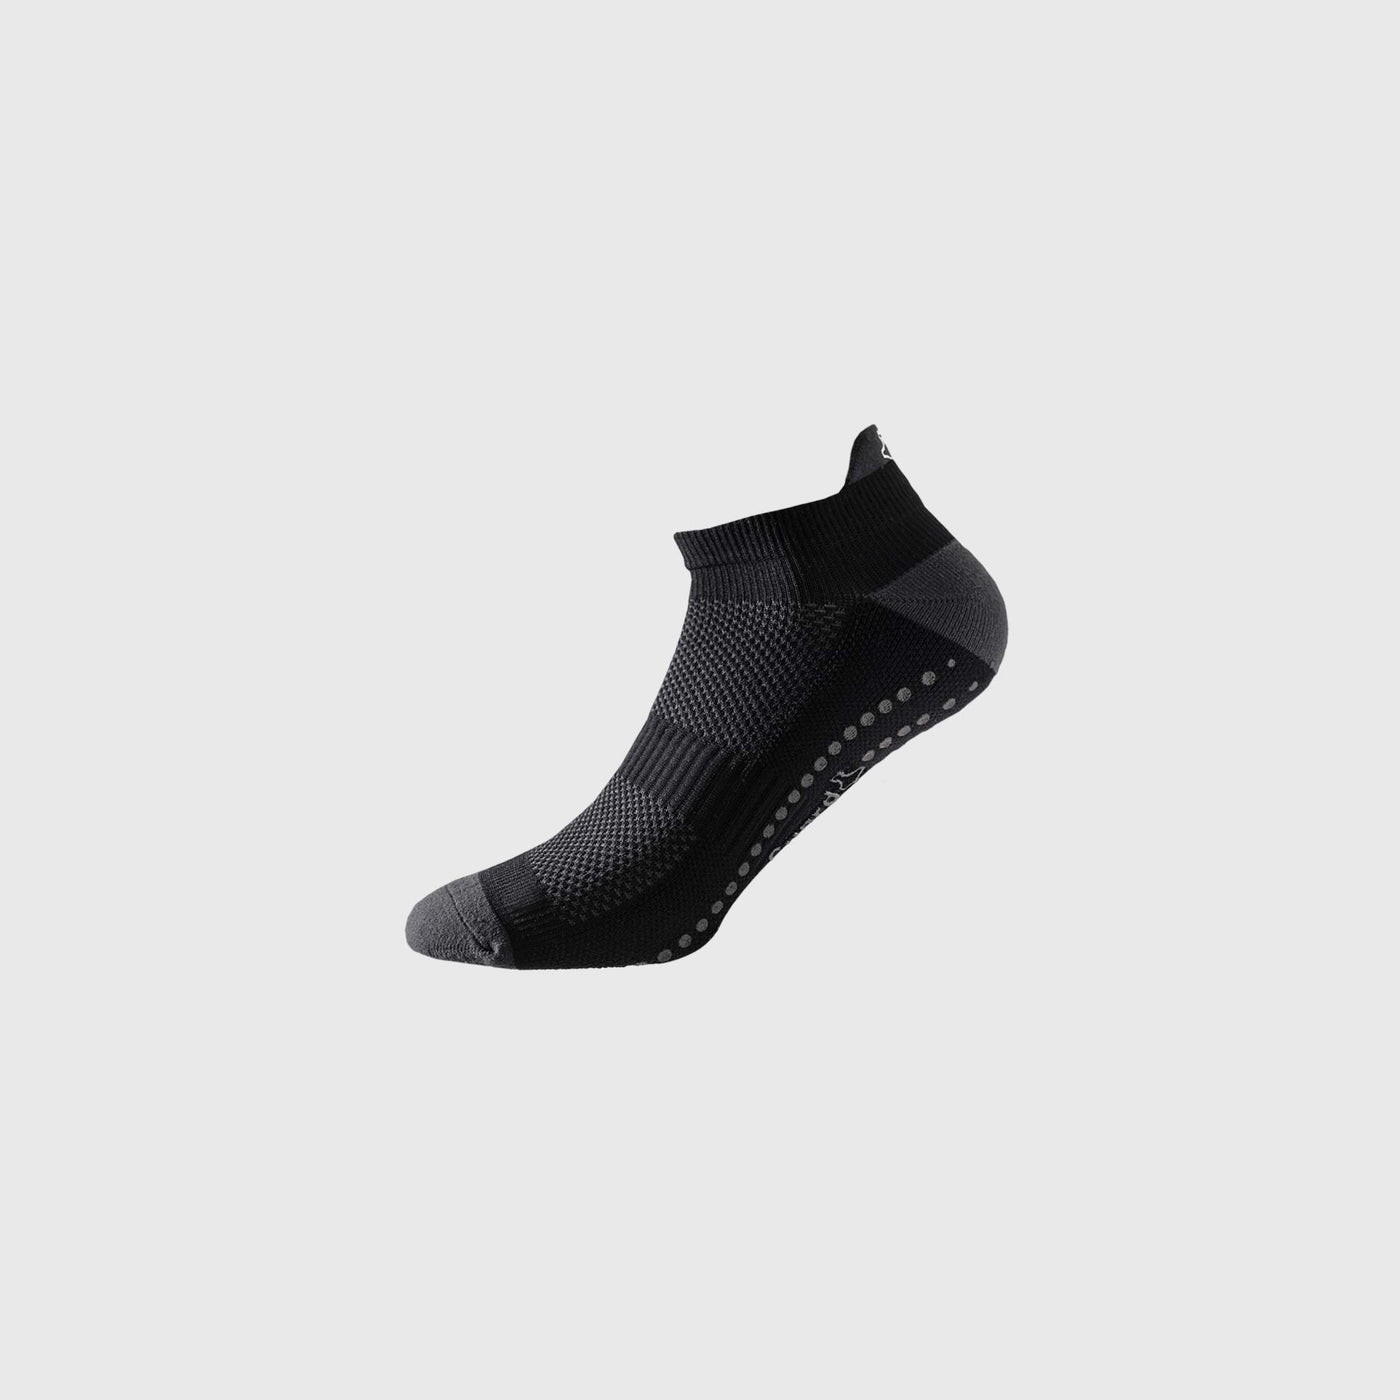 Liiteguard SHORT-GRIP Short socks BLACK